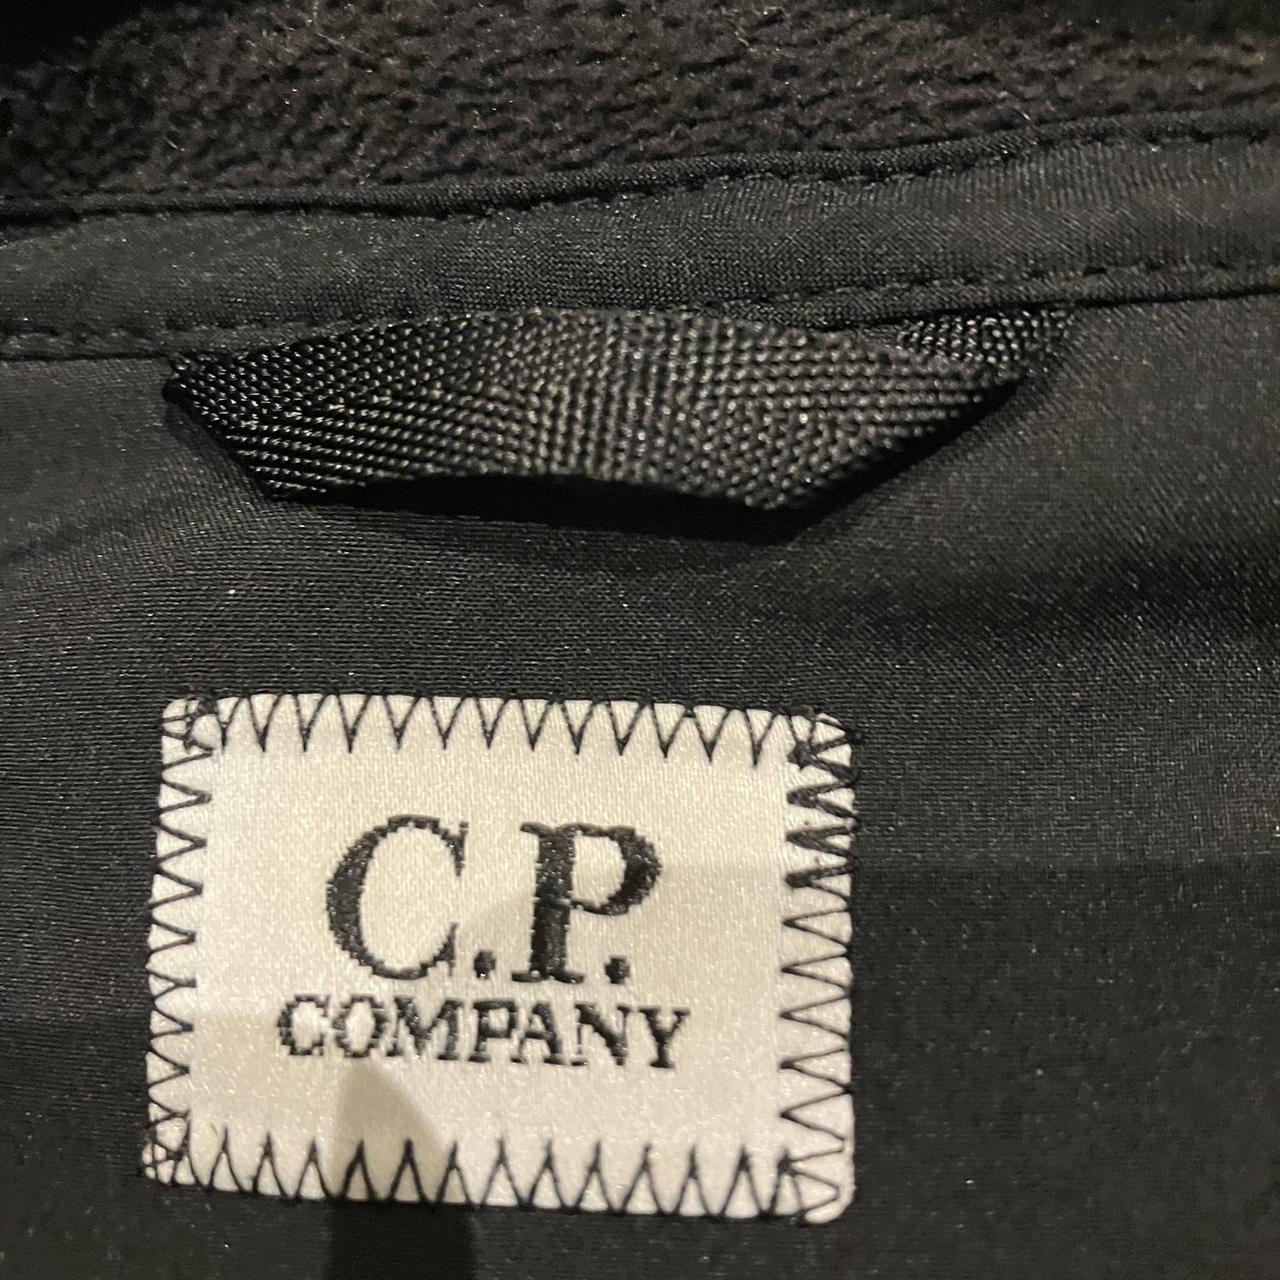 Cp company goggle shell jacket - Depop